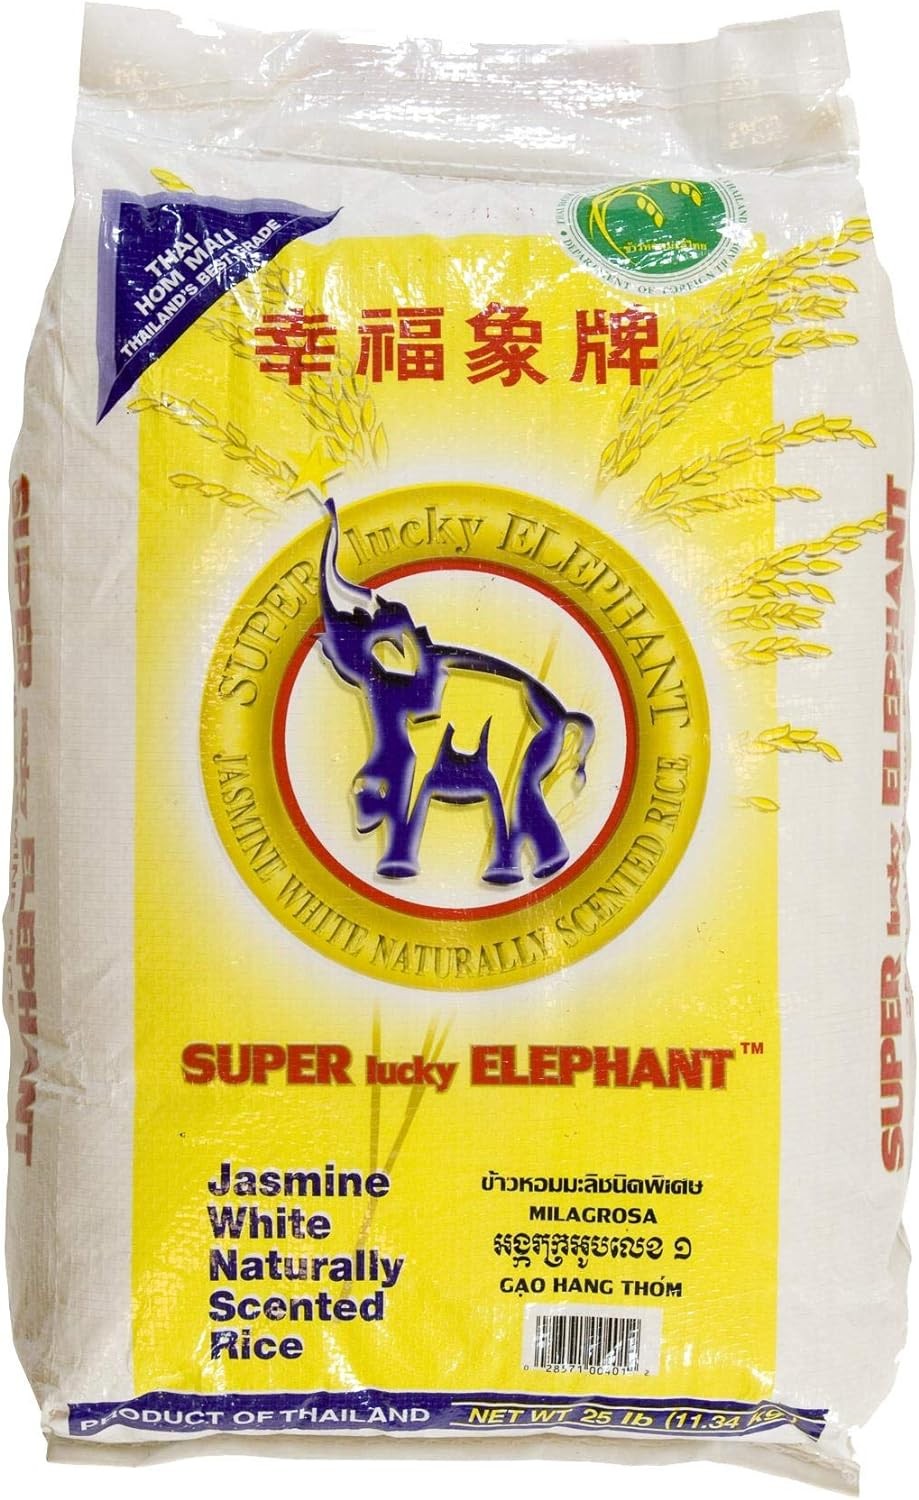 SUPER LUCKY ELEPHANT JASMINE RICE 25lb